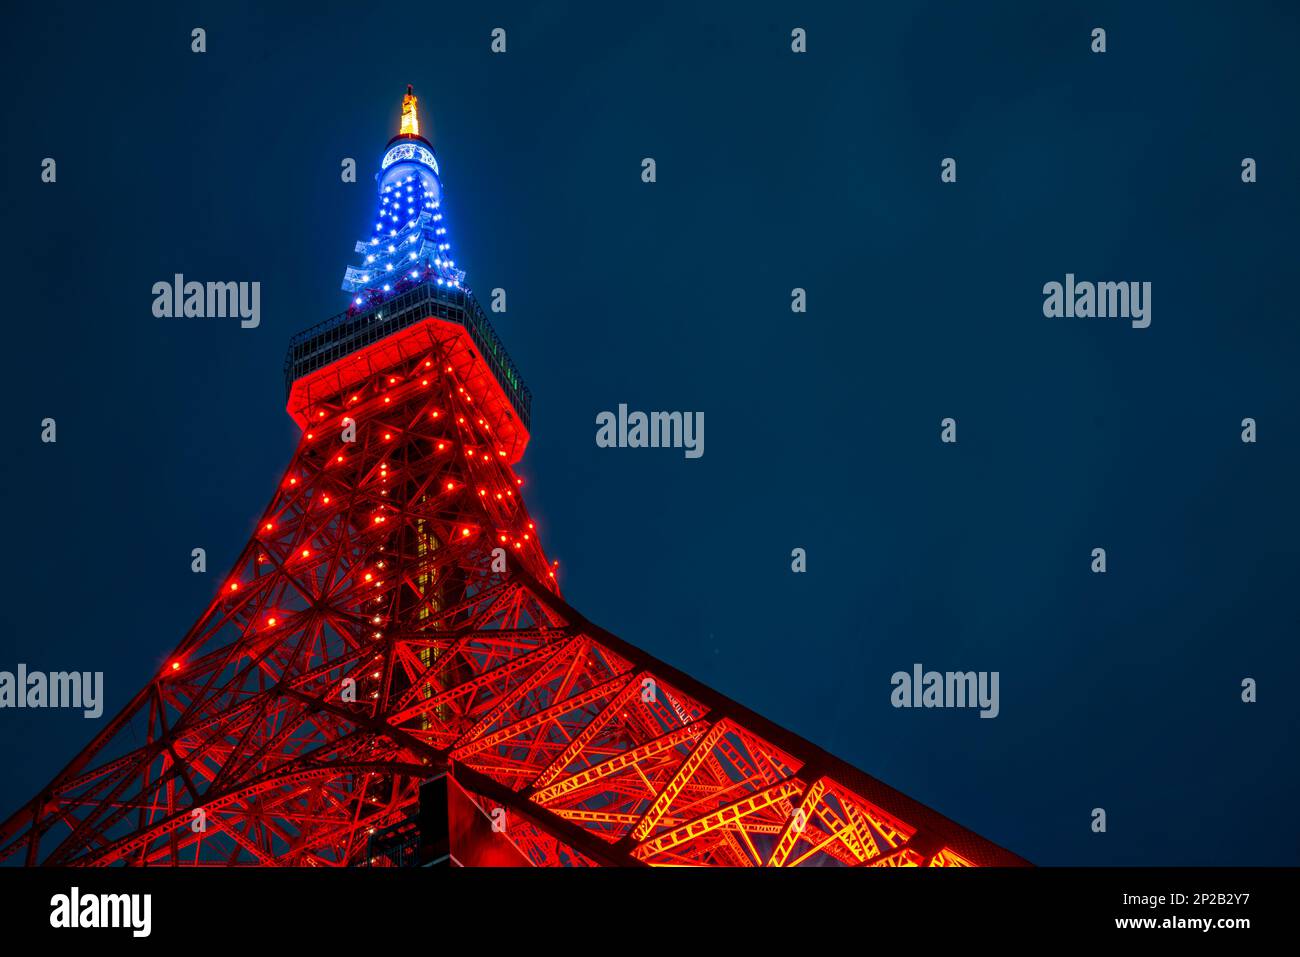 La Tour de Tokyo, un monument emblématique du Japon, s'élève au cœur de Tokyo, illuminant les gratte-ciel de la ville avec sa structure en acier rouge et blanc Banque D'Images